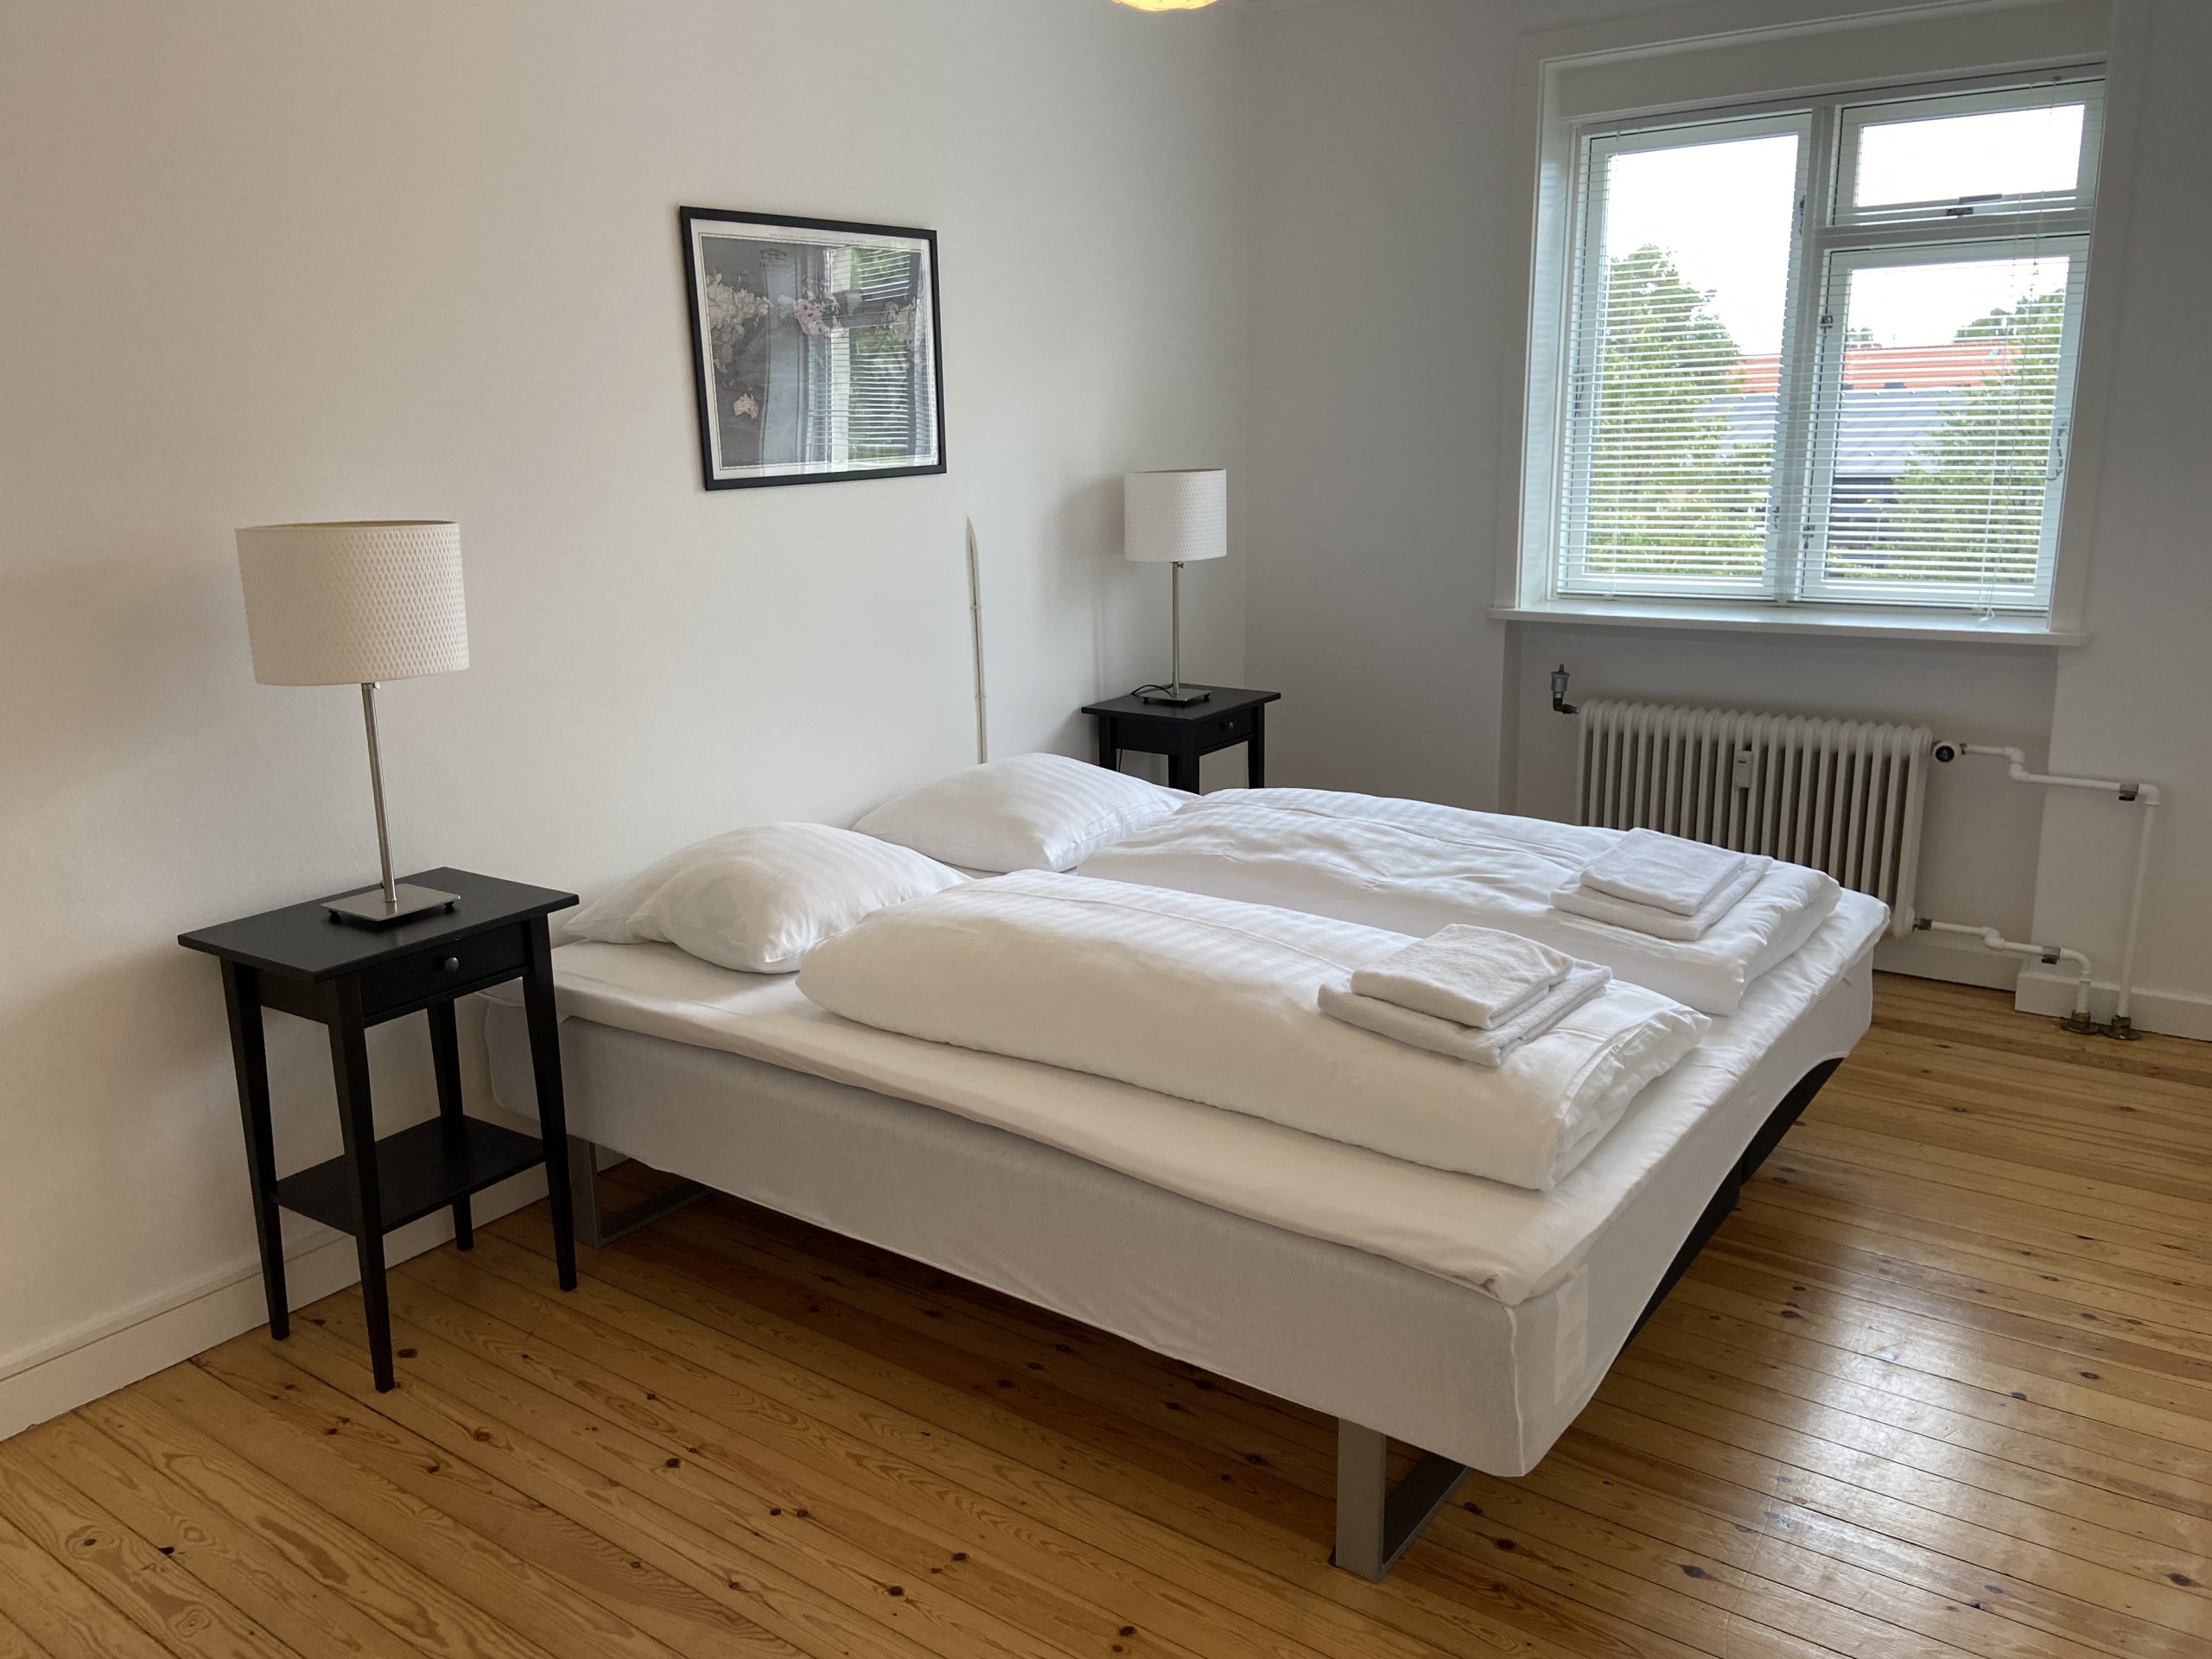 1761 – Velindrettet 3 værelses lejlighed i Vanløse